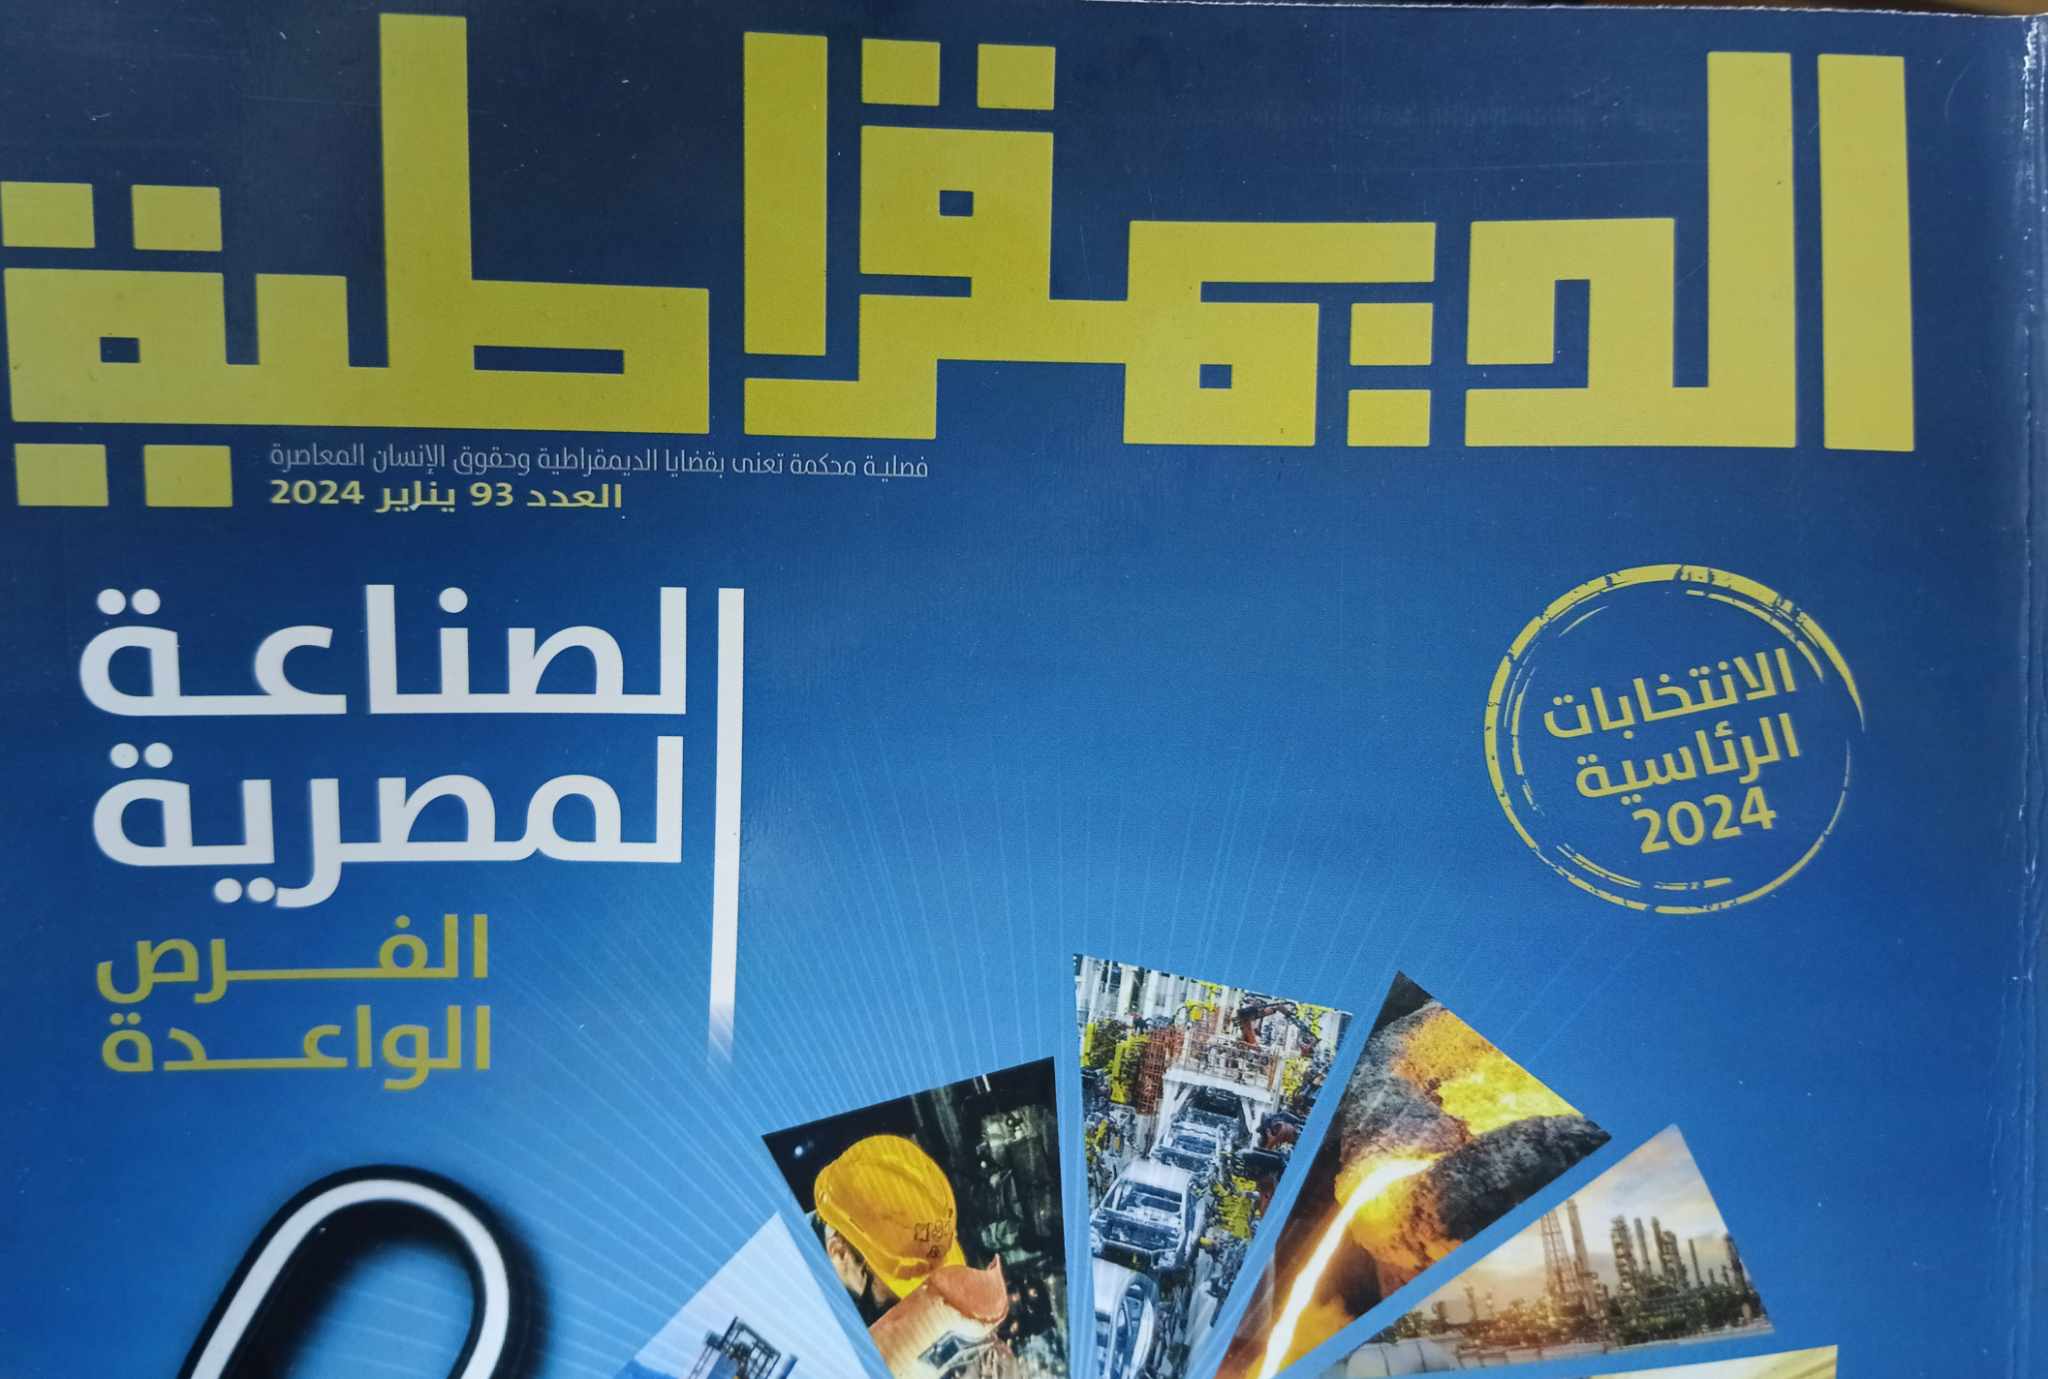 الصناعة المصرية.. الفرص الواعدة" في مجلة "الديمقراطية" - بوابة الأهرام